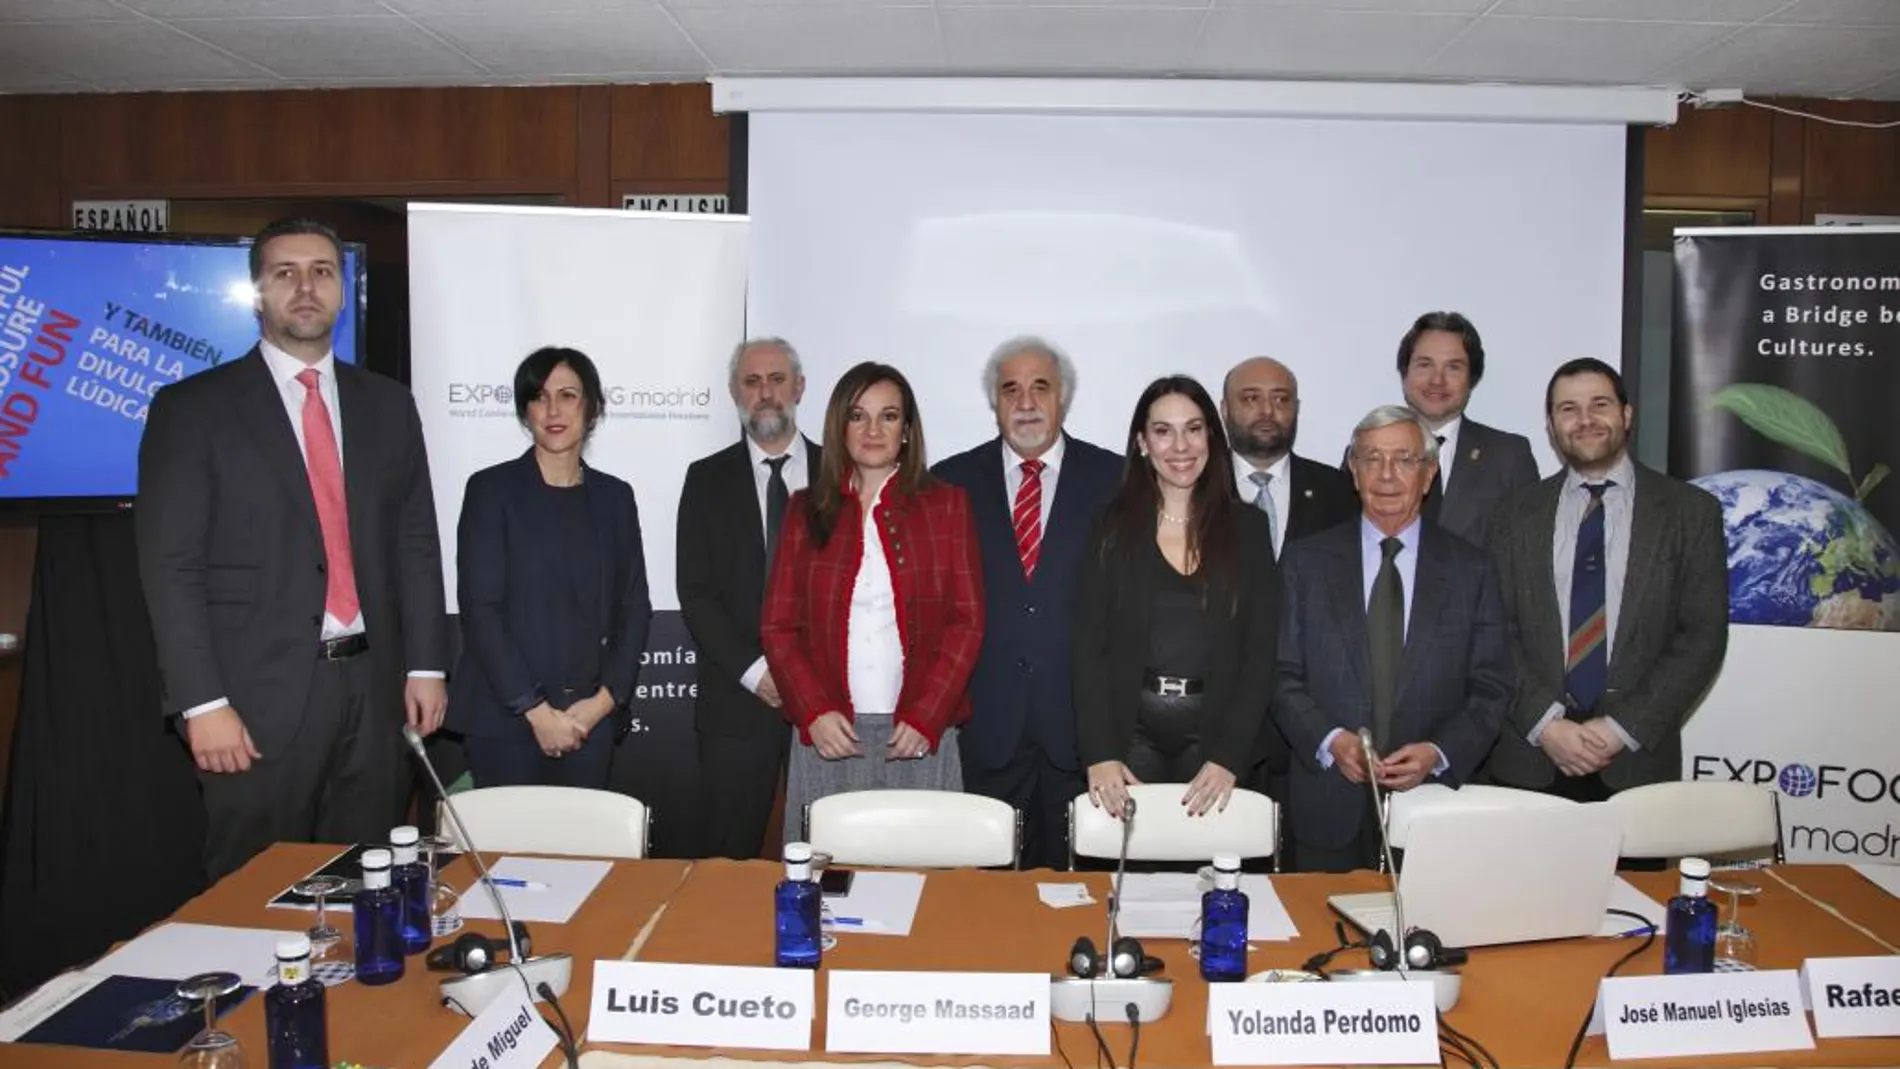 Foto de familia de los panelistas de presentación del Congreso EXPOFOODING Madrid 2016